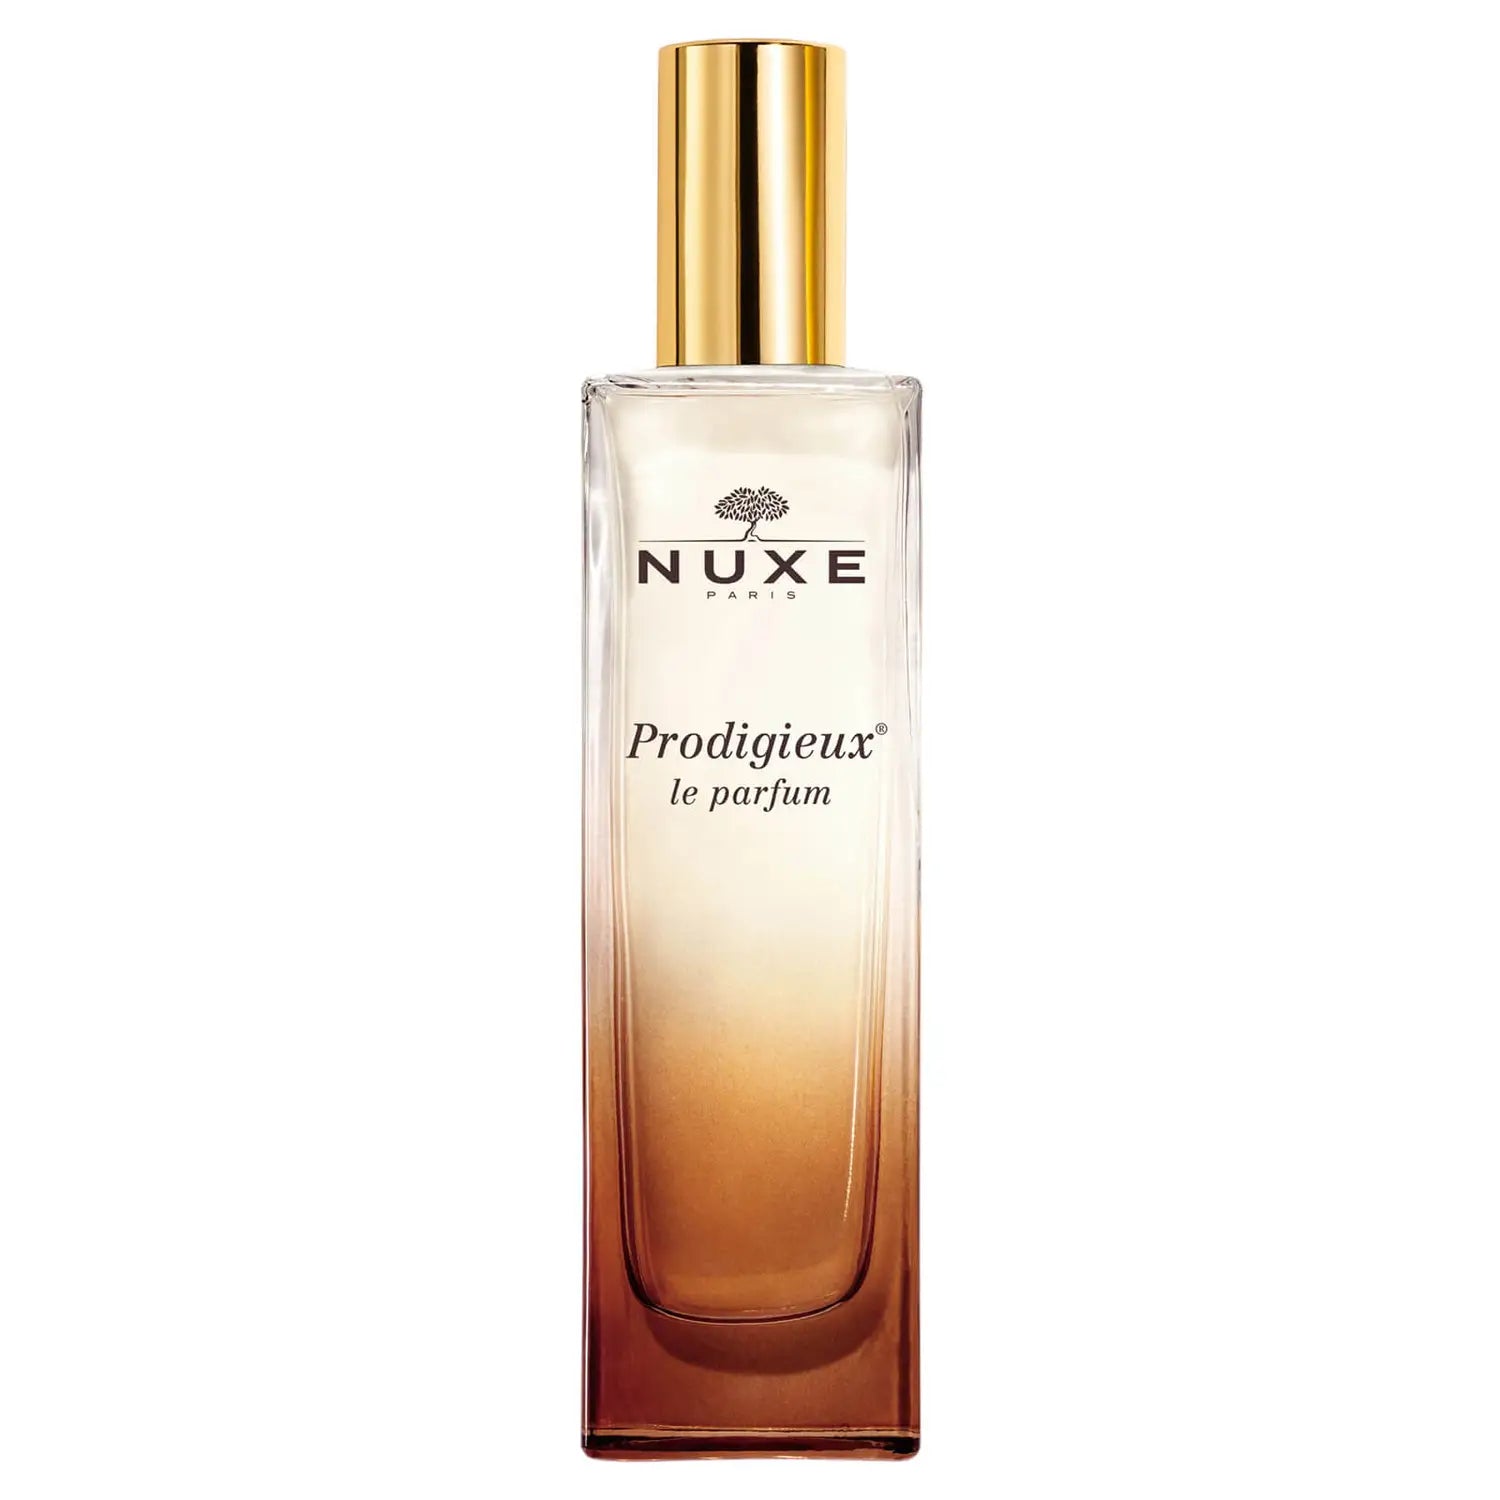 Nuxe Prodigieux® Le parfum 50ml